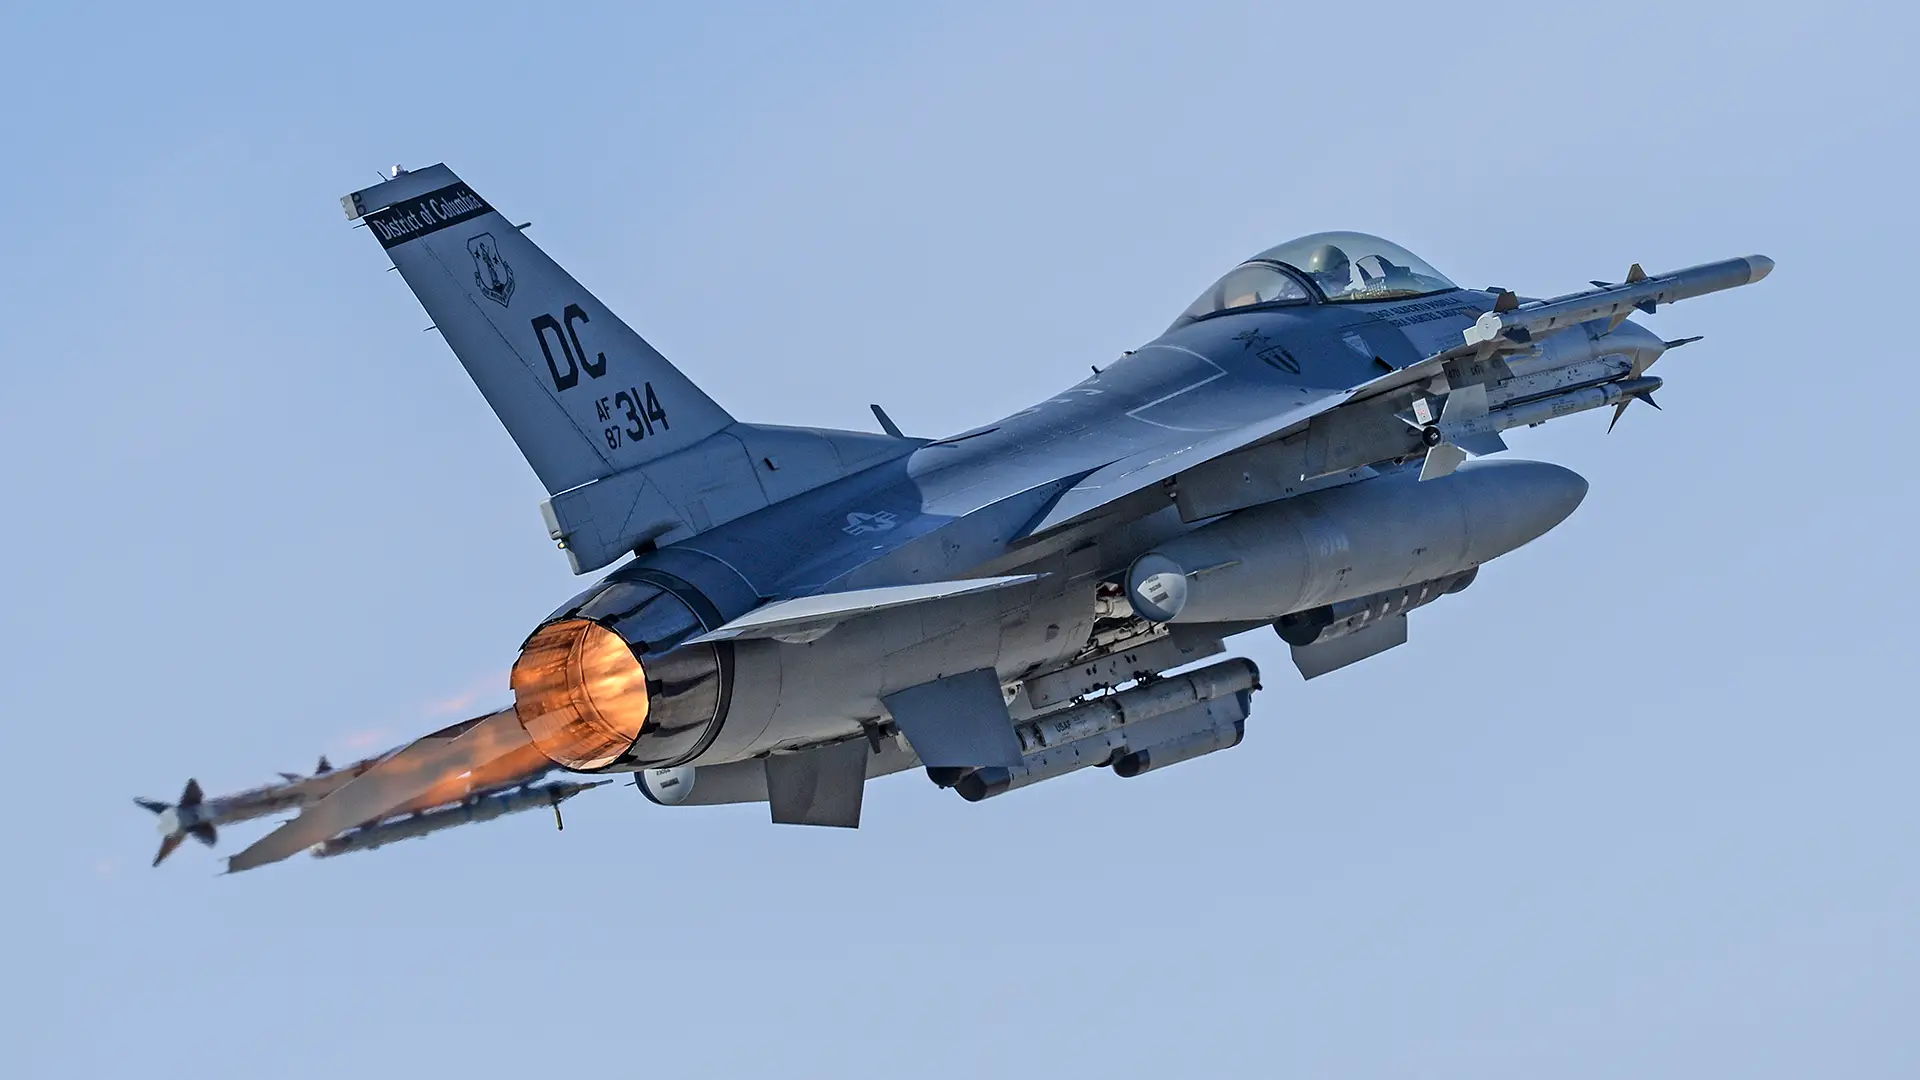 Pentagon zezwala myśliwcom F-16 na lot z prędkością naddźwiękową nad Waszyngtonem w celu przechwycenia Cessny 560 Citation V - biznesowy odrzutowiec nie nawiązał kontaktu i ostatecznie się rozbił.